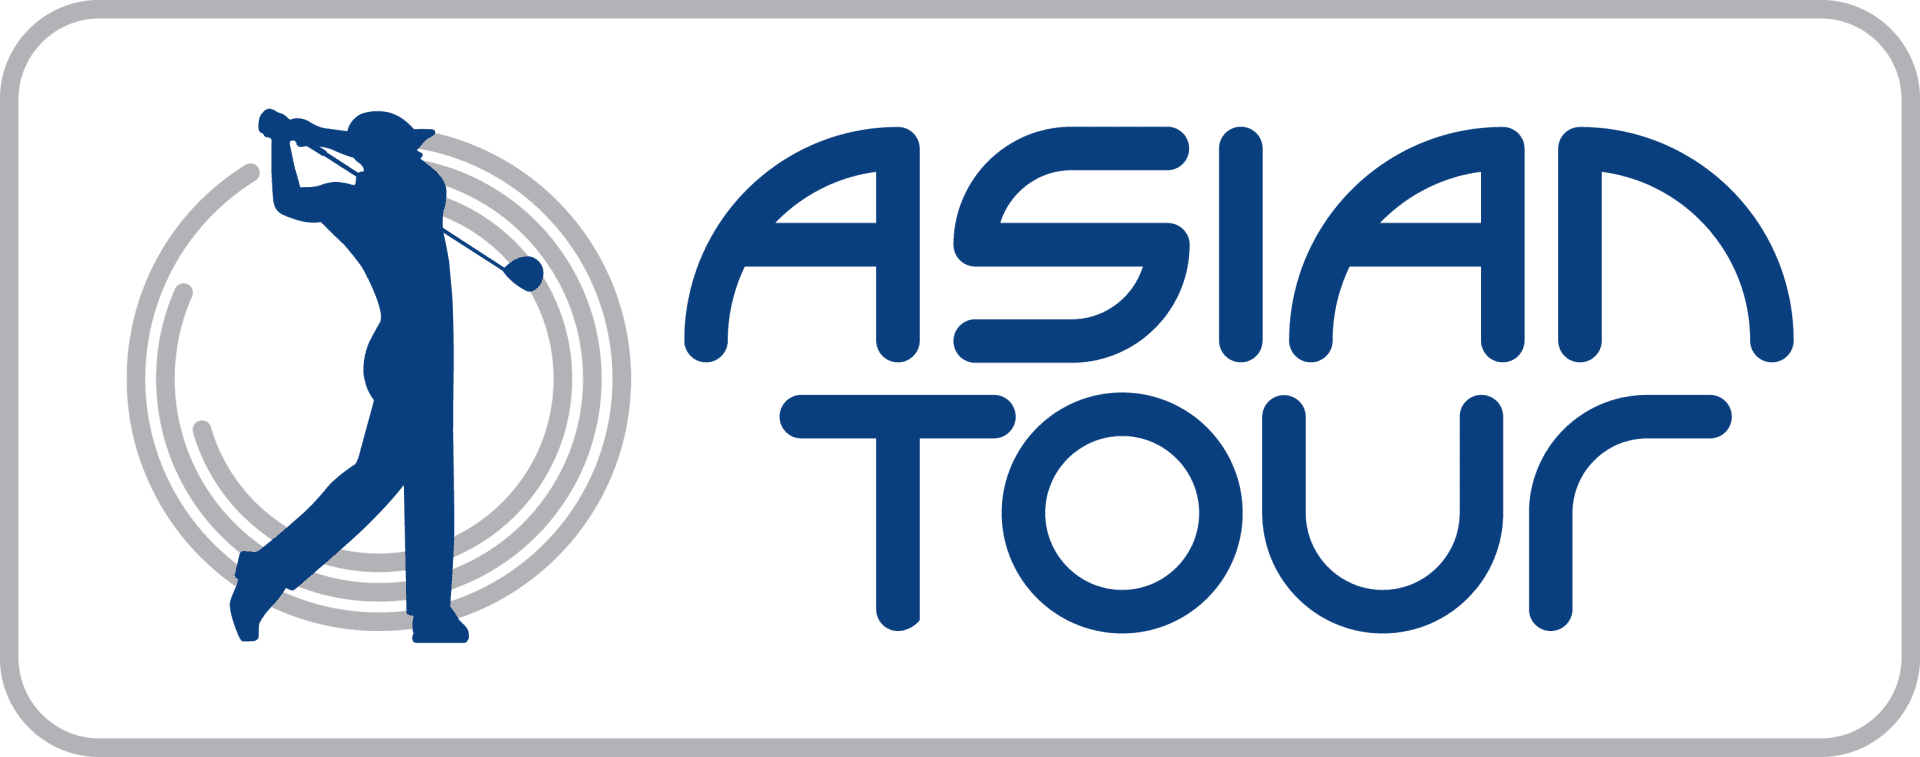 golf pga asian tour